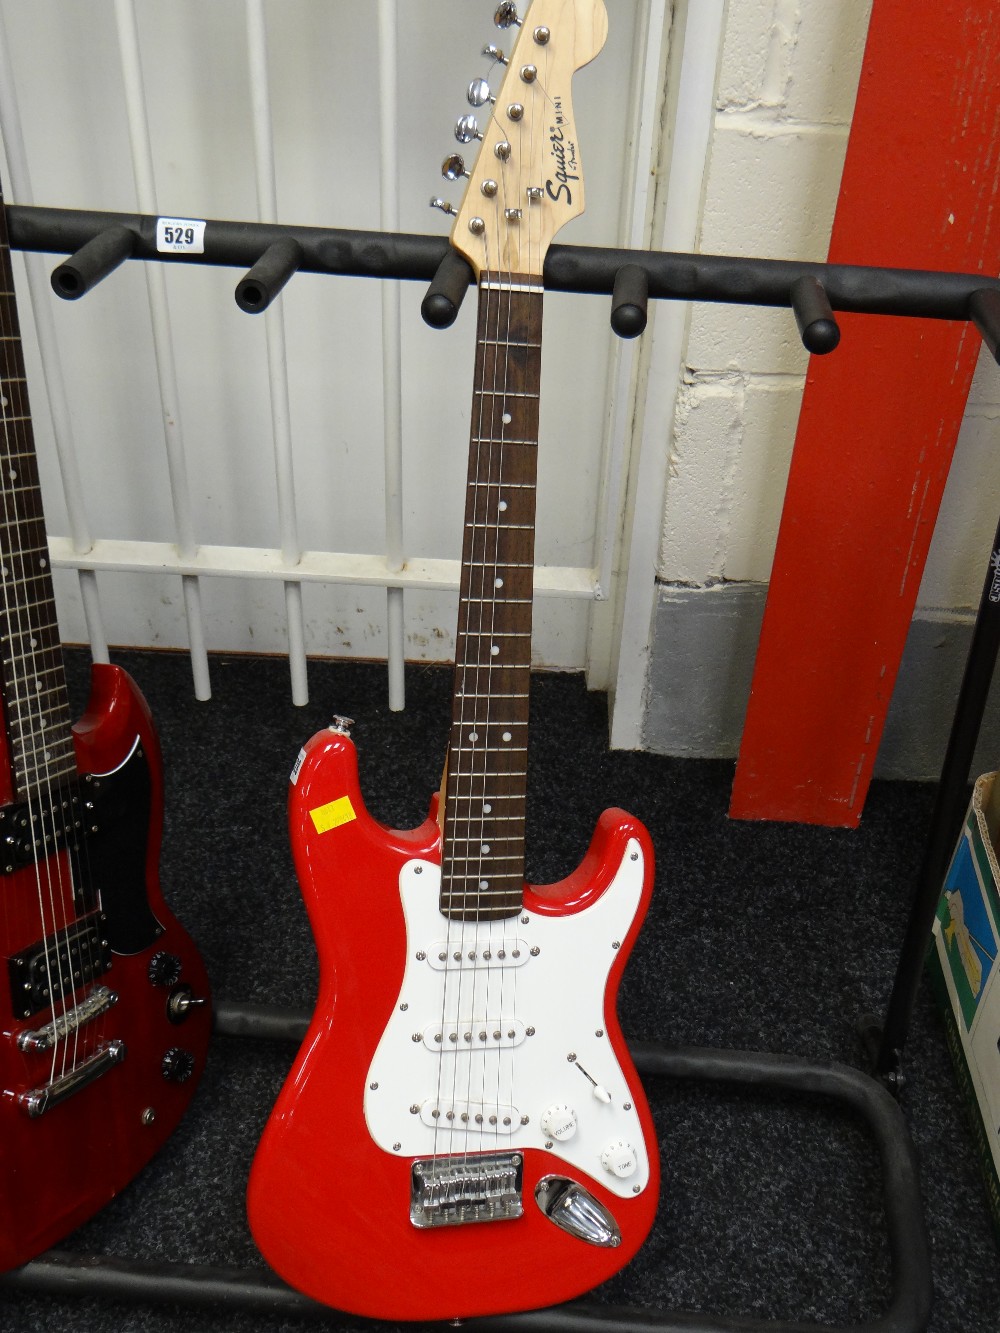 A replica Fender Squire mini electric guitar